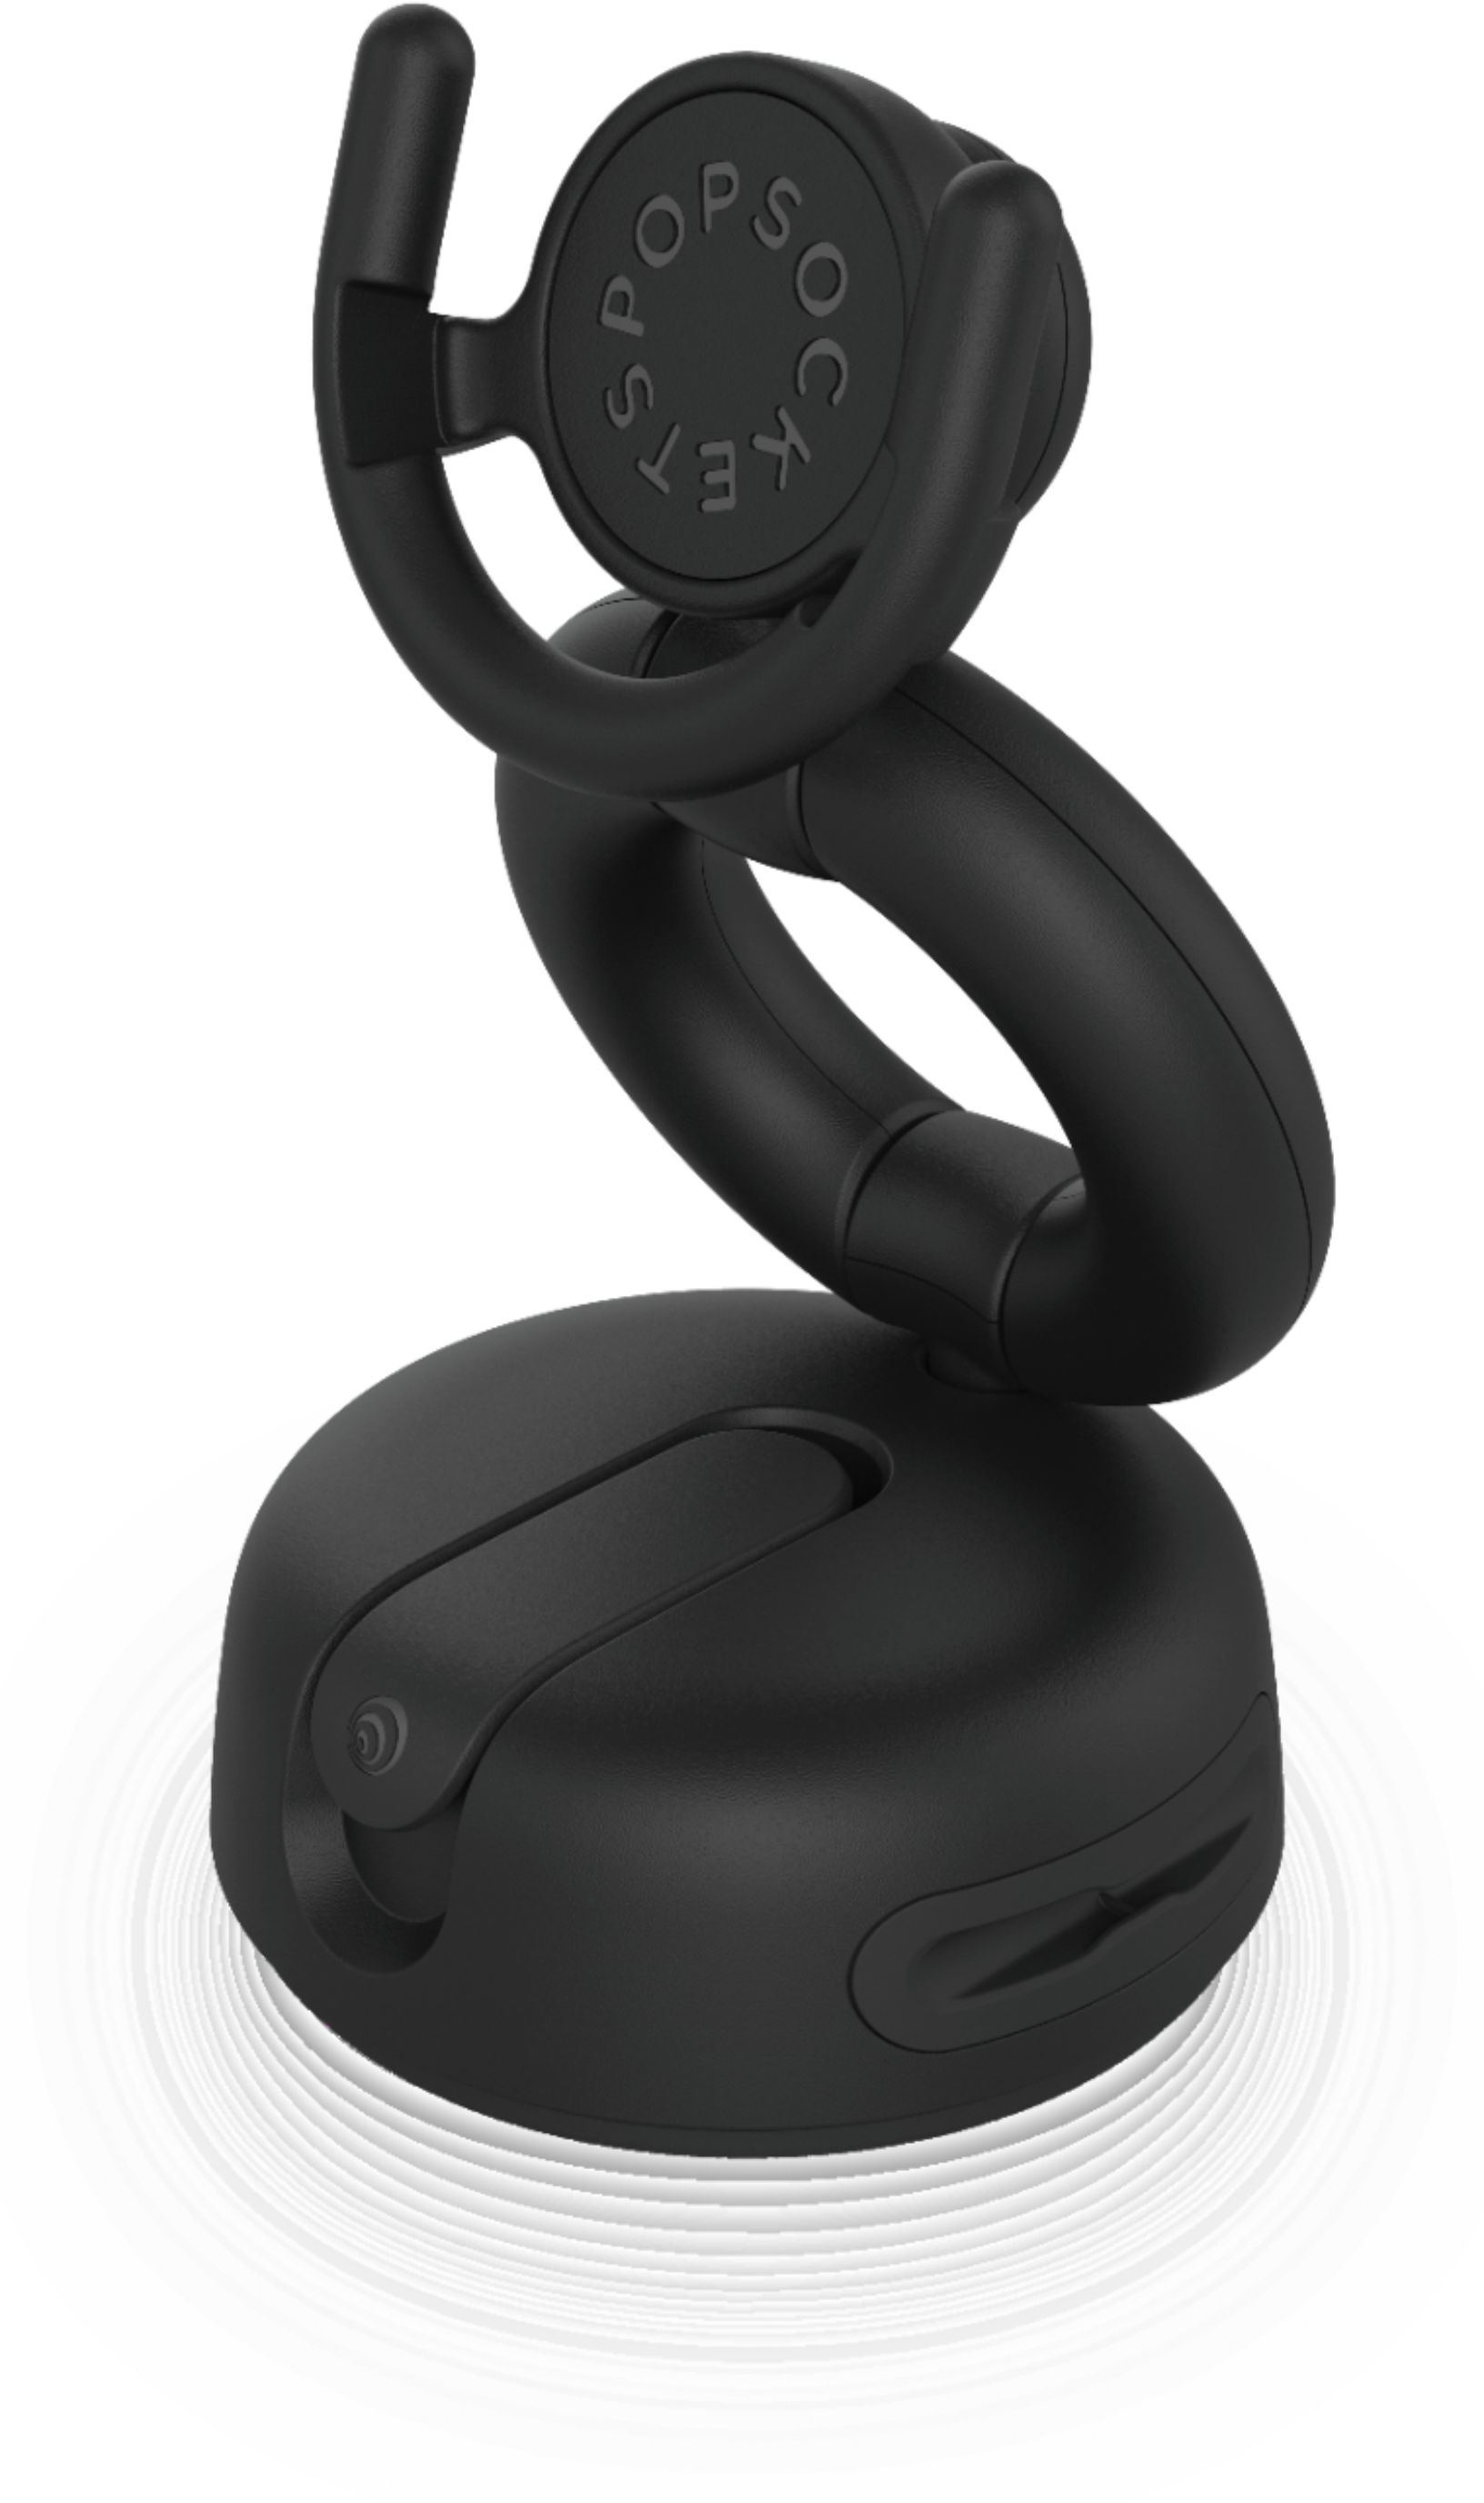 PopSockets Car Dash & Windshield Car Holder for Mobile Phones Black 801293 - Best